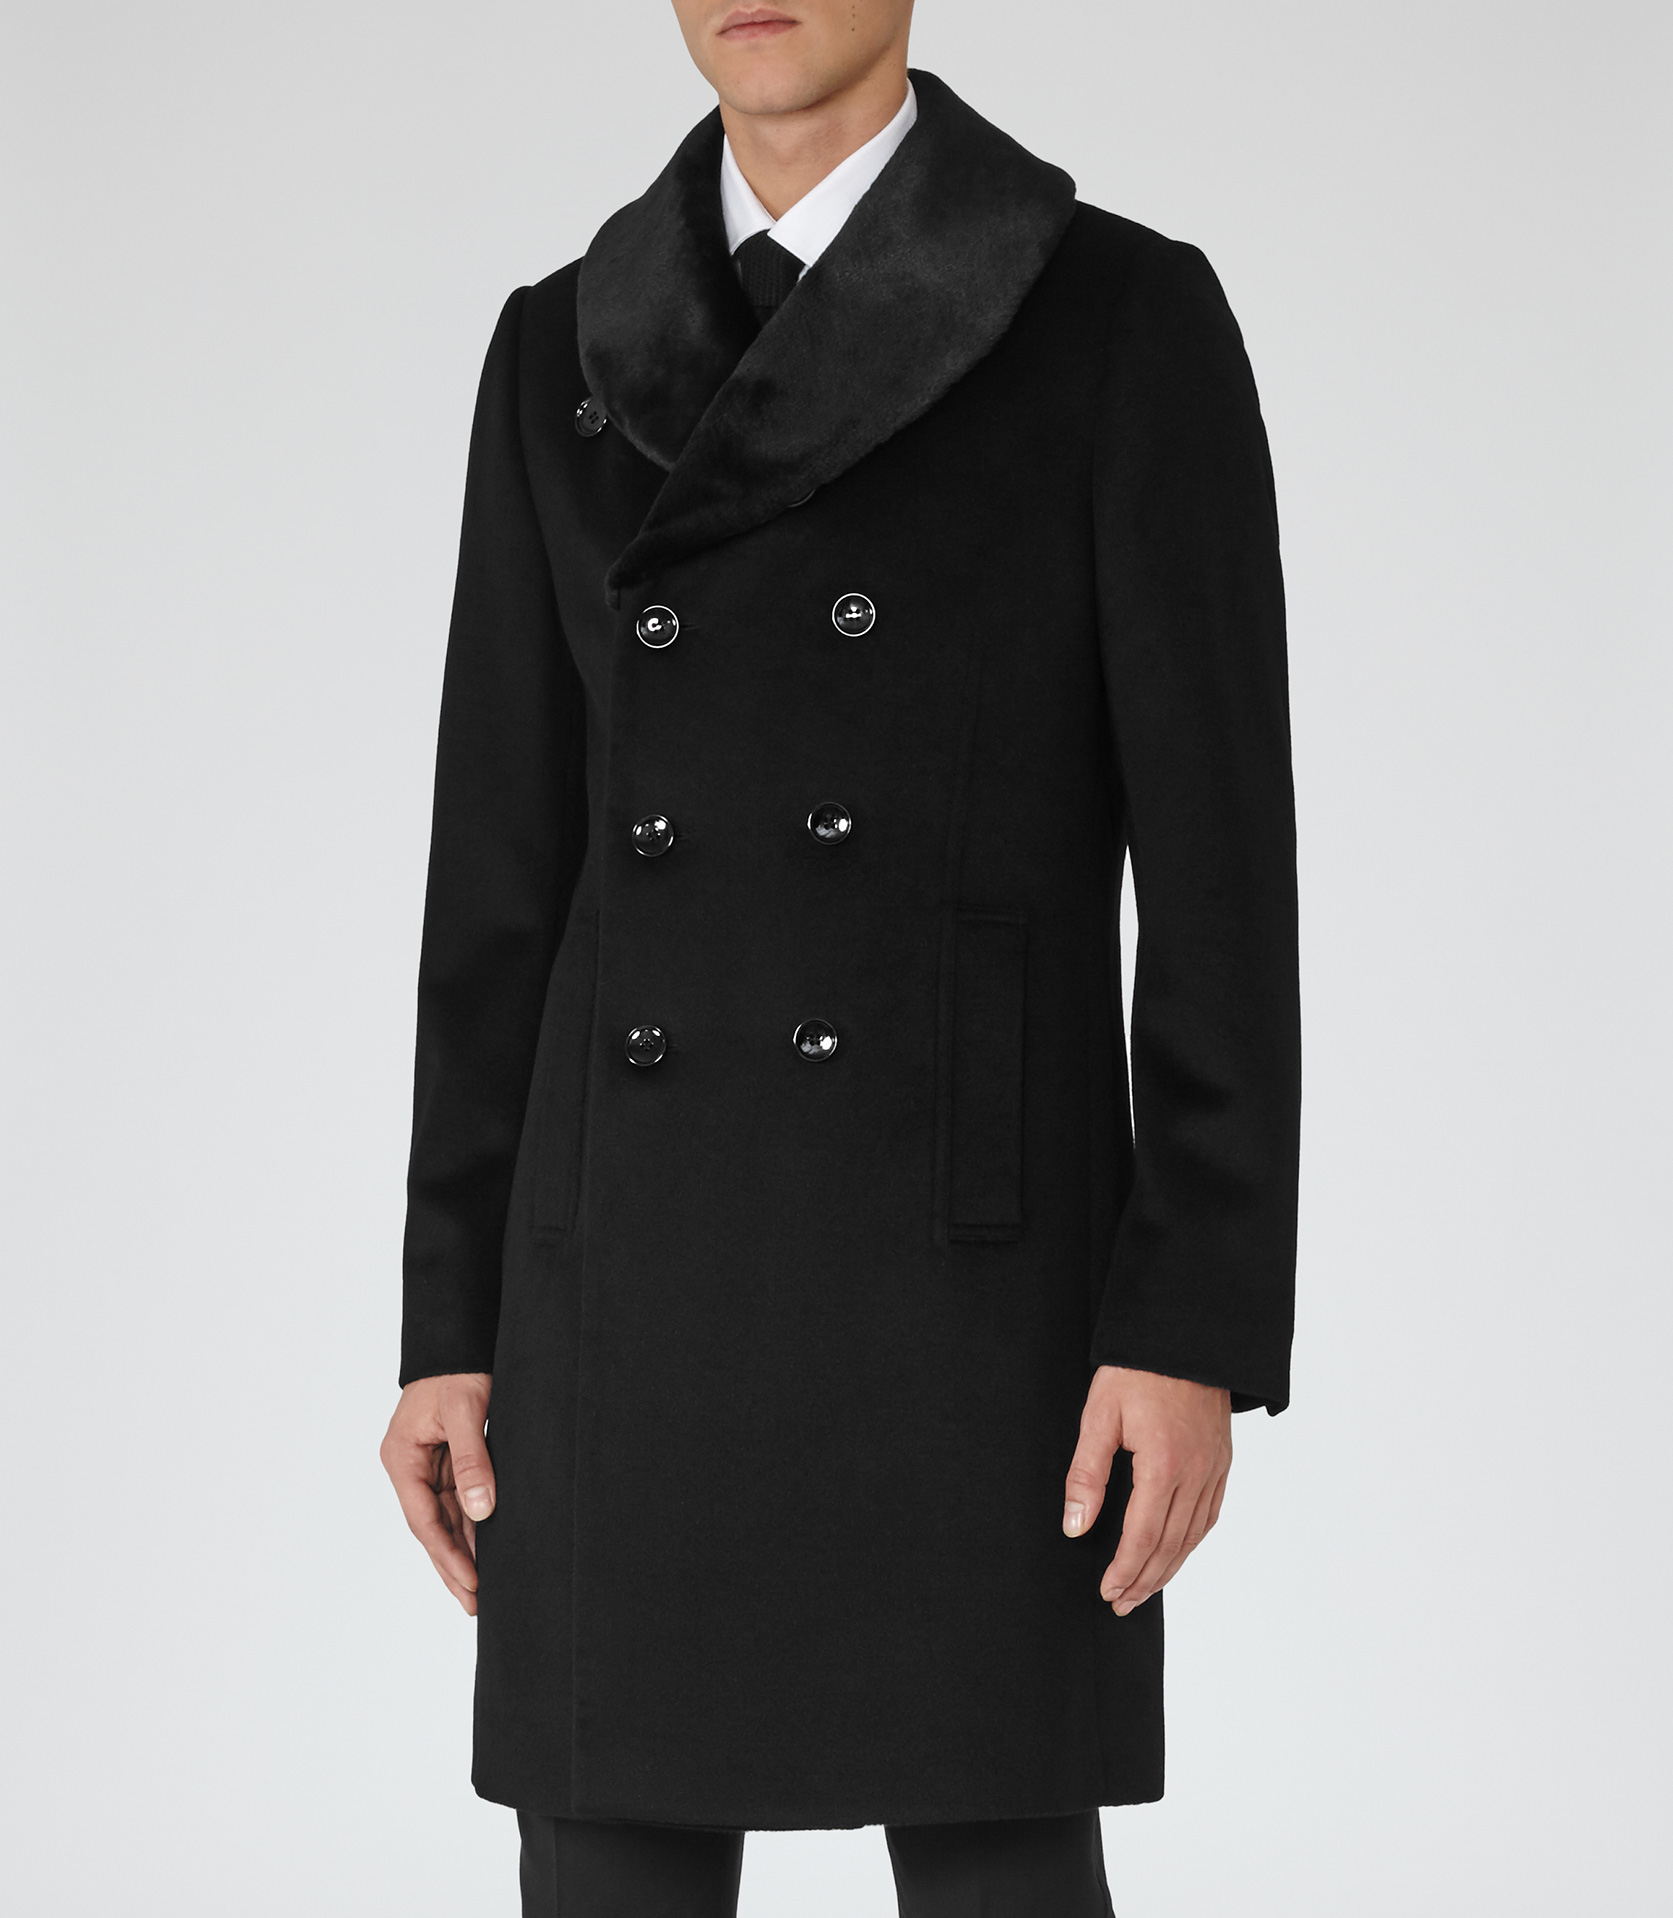 Reiss Wool Mcgregor Shawl Collar Overcoat in Black for Men - Lyst